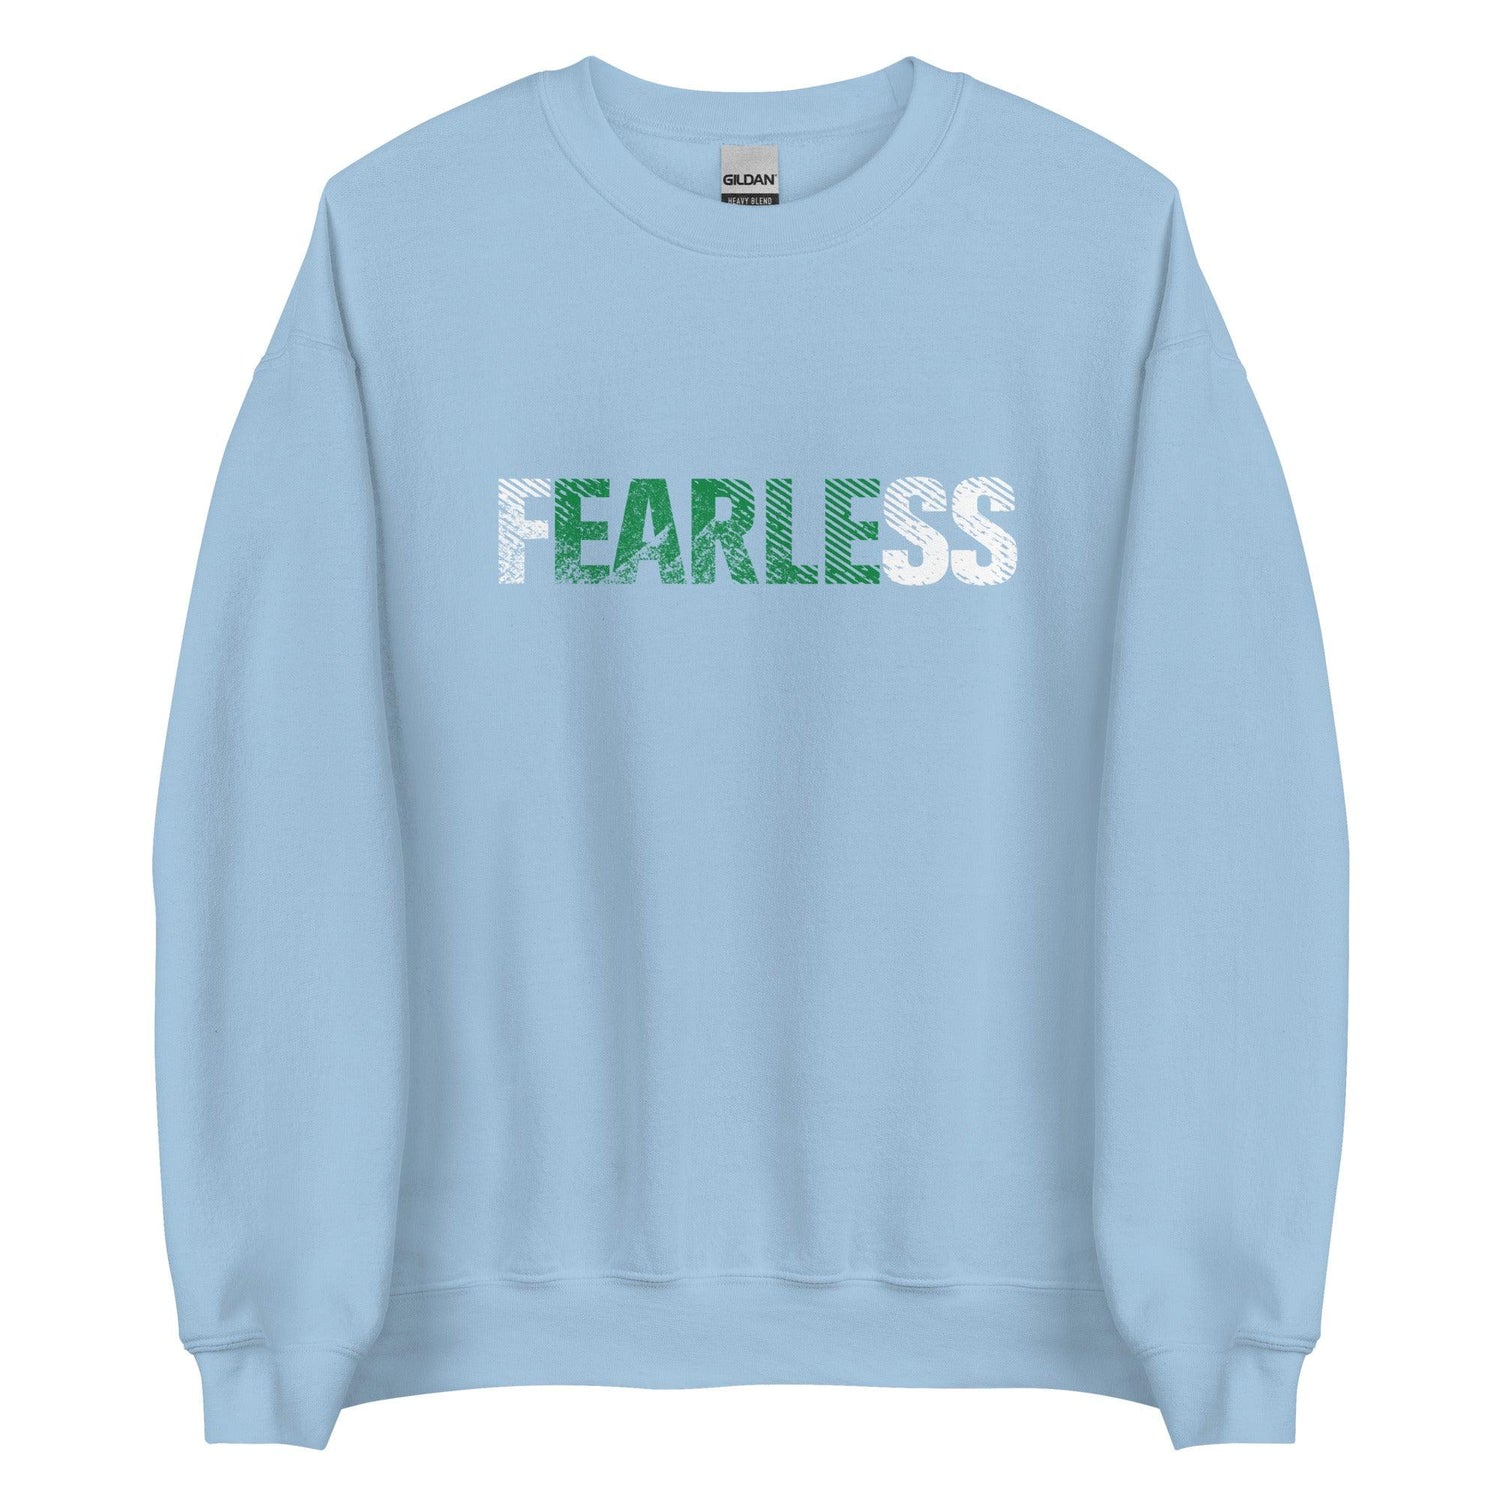 Stone Earle "FEARLESS" Sweatshirt - Fan Arch